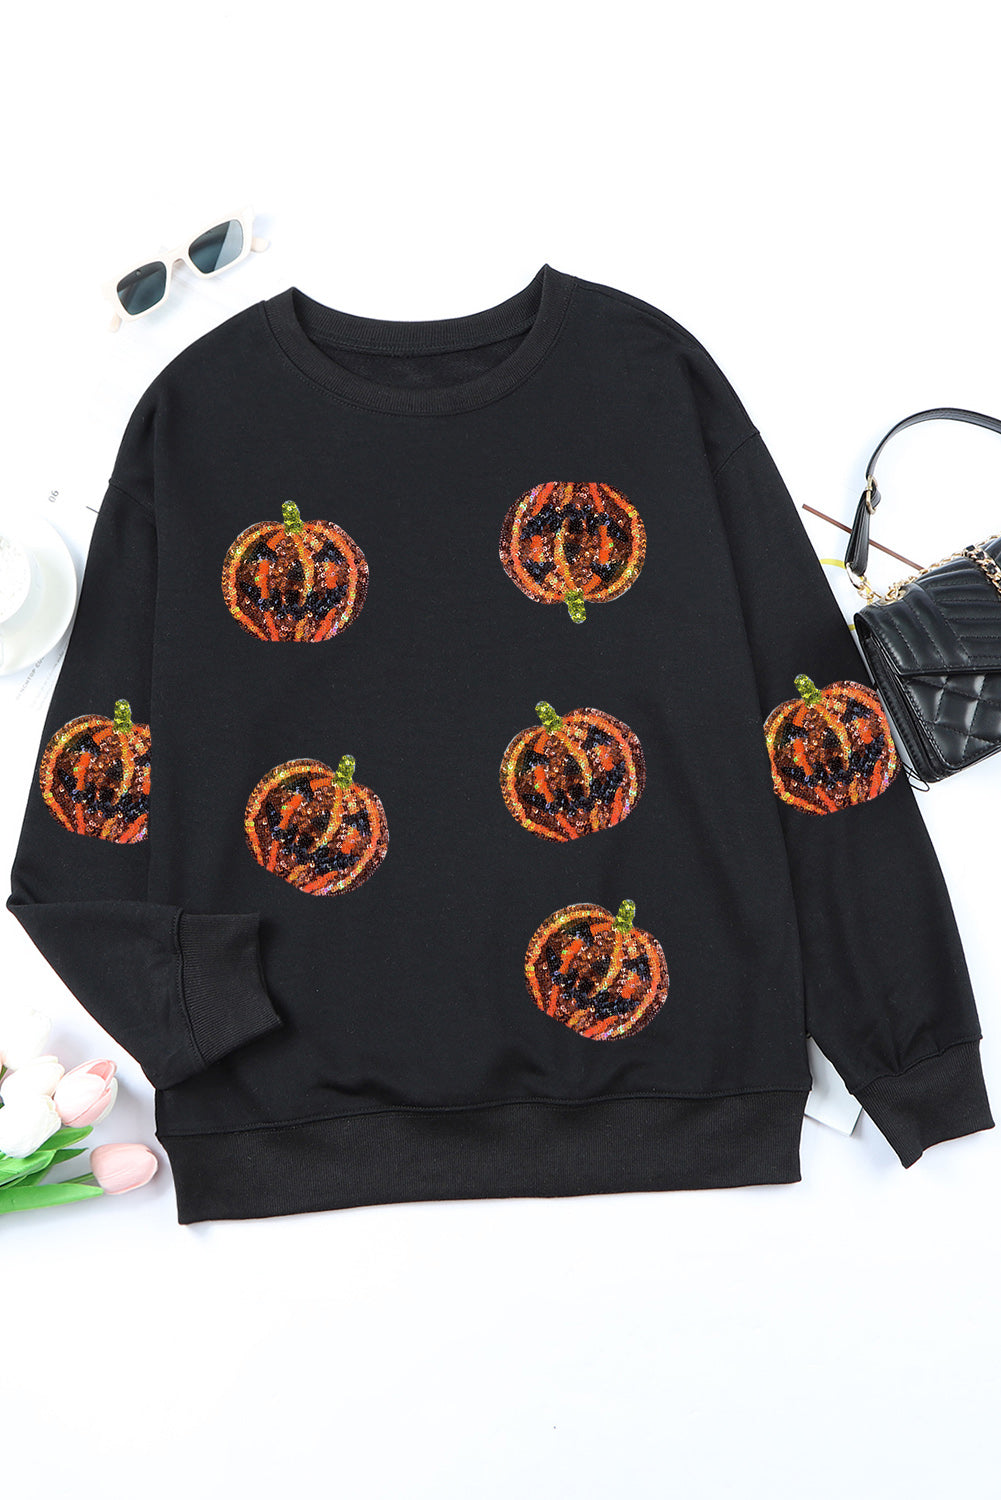 Black Sequin Halloween Pumpkin Graphic Pullover Sweatshirt Graphic Sweatshirts JT's Designer Fashion